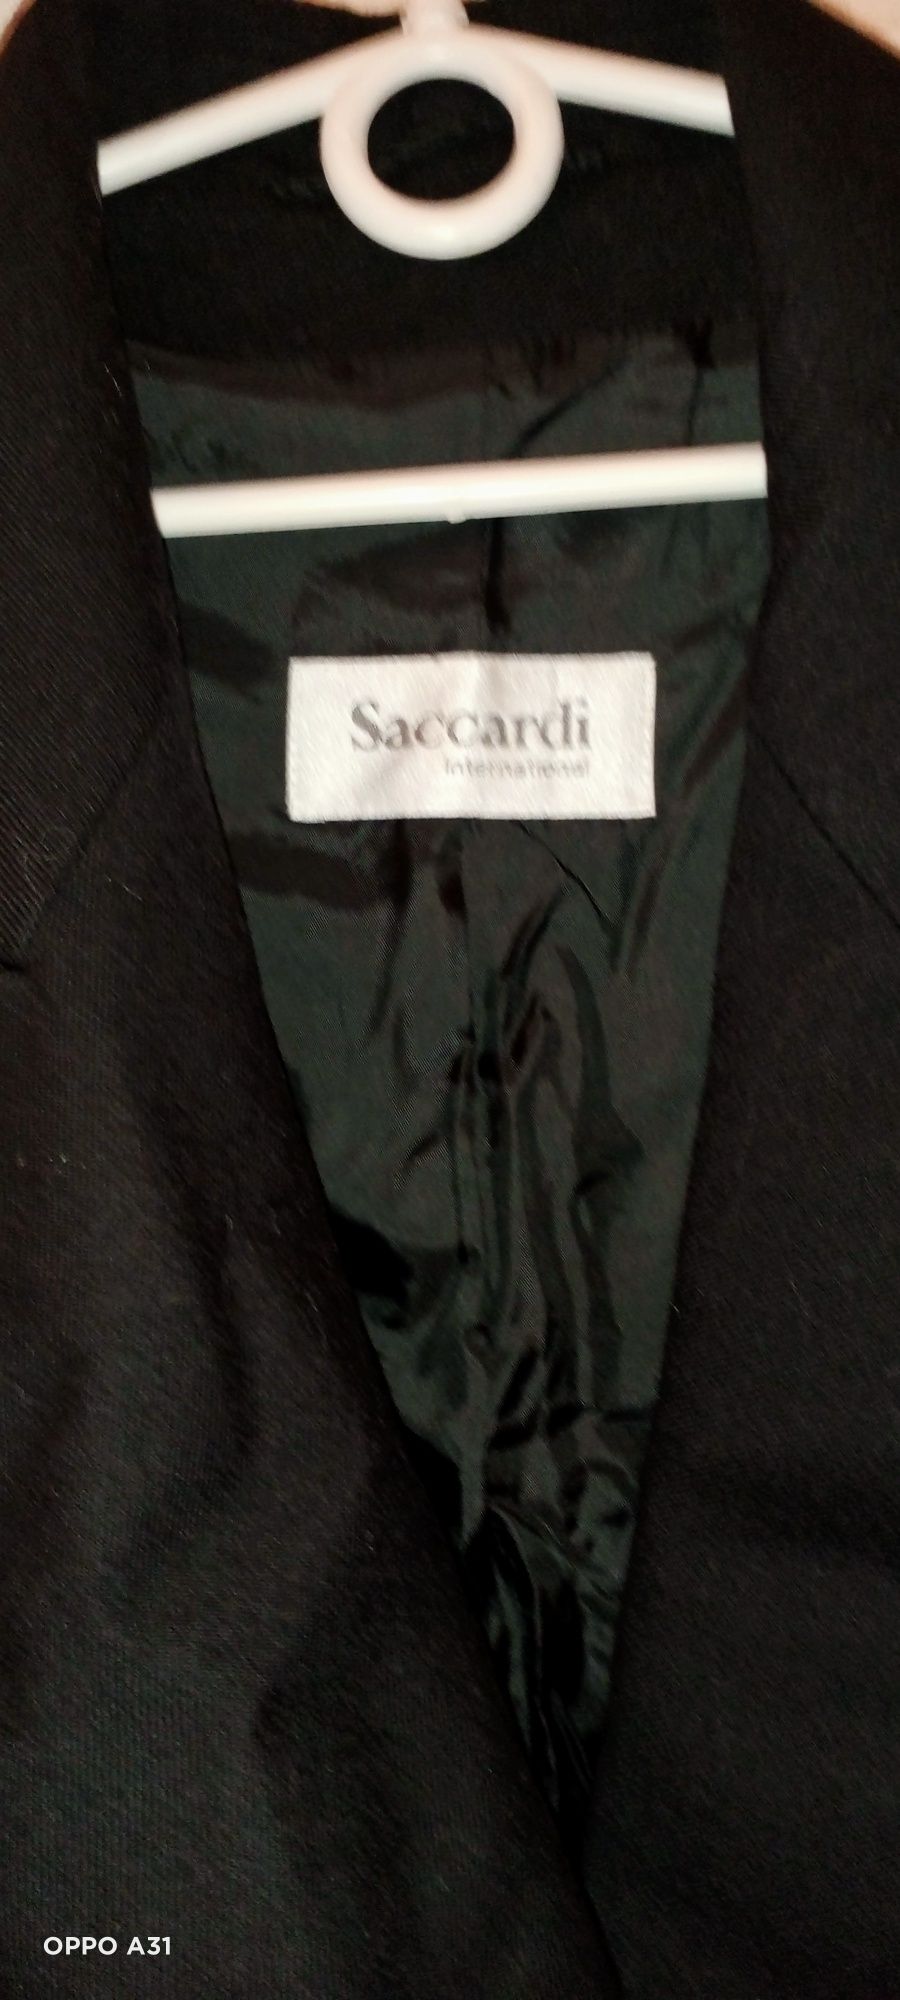 Ekskluzywny włoski  płaszcz z wełny kaszmirowej . Rozmiar L/XL.